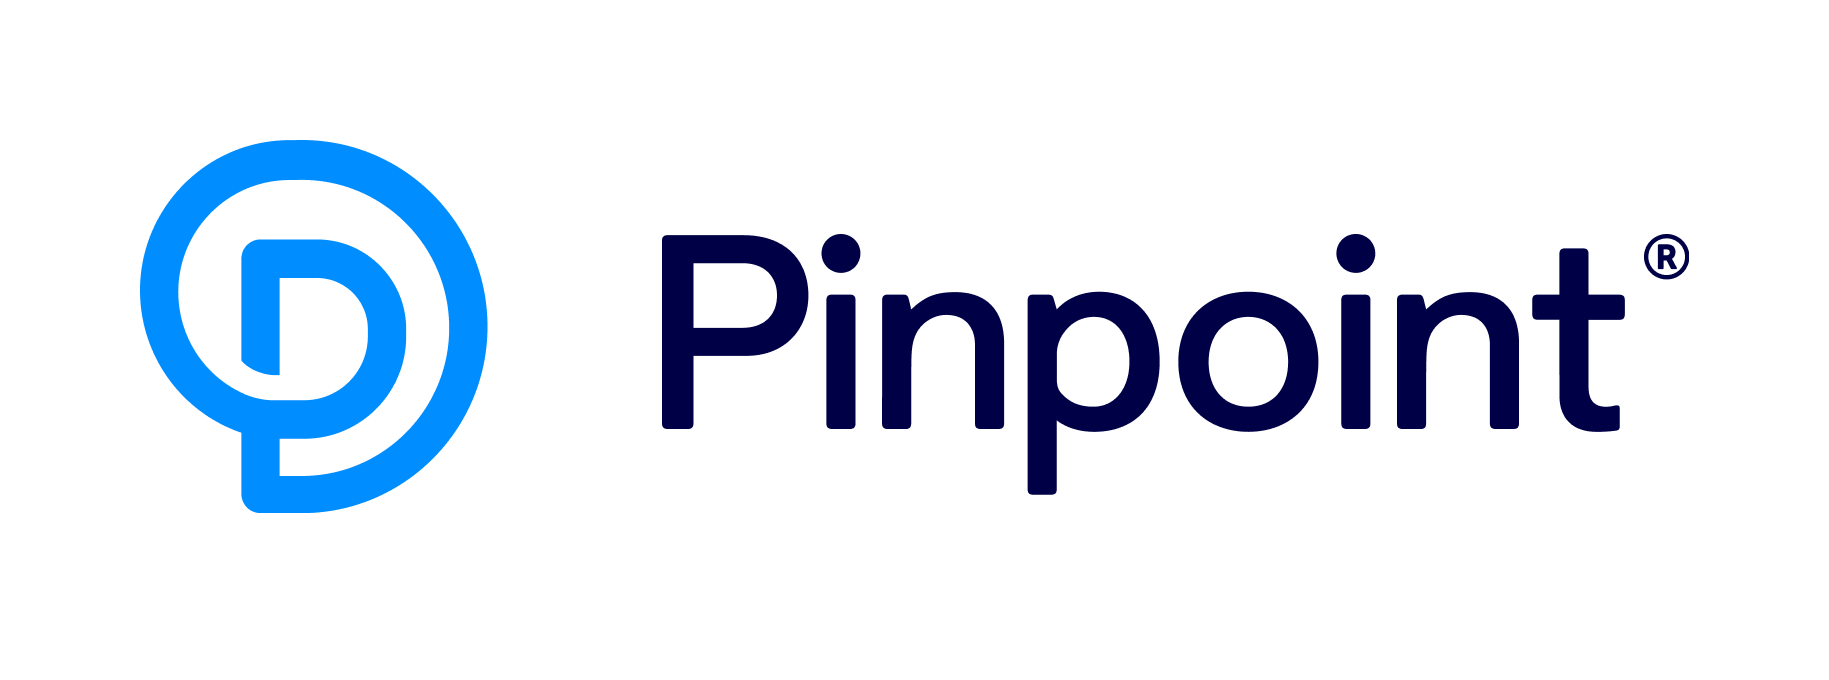 React jobs at Pinpoint